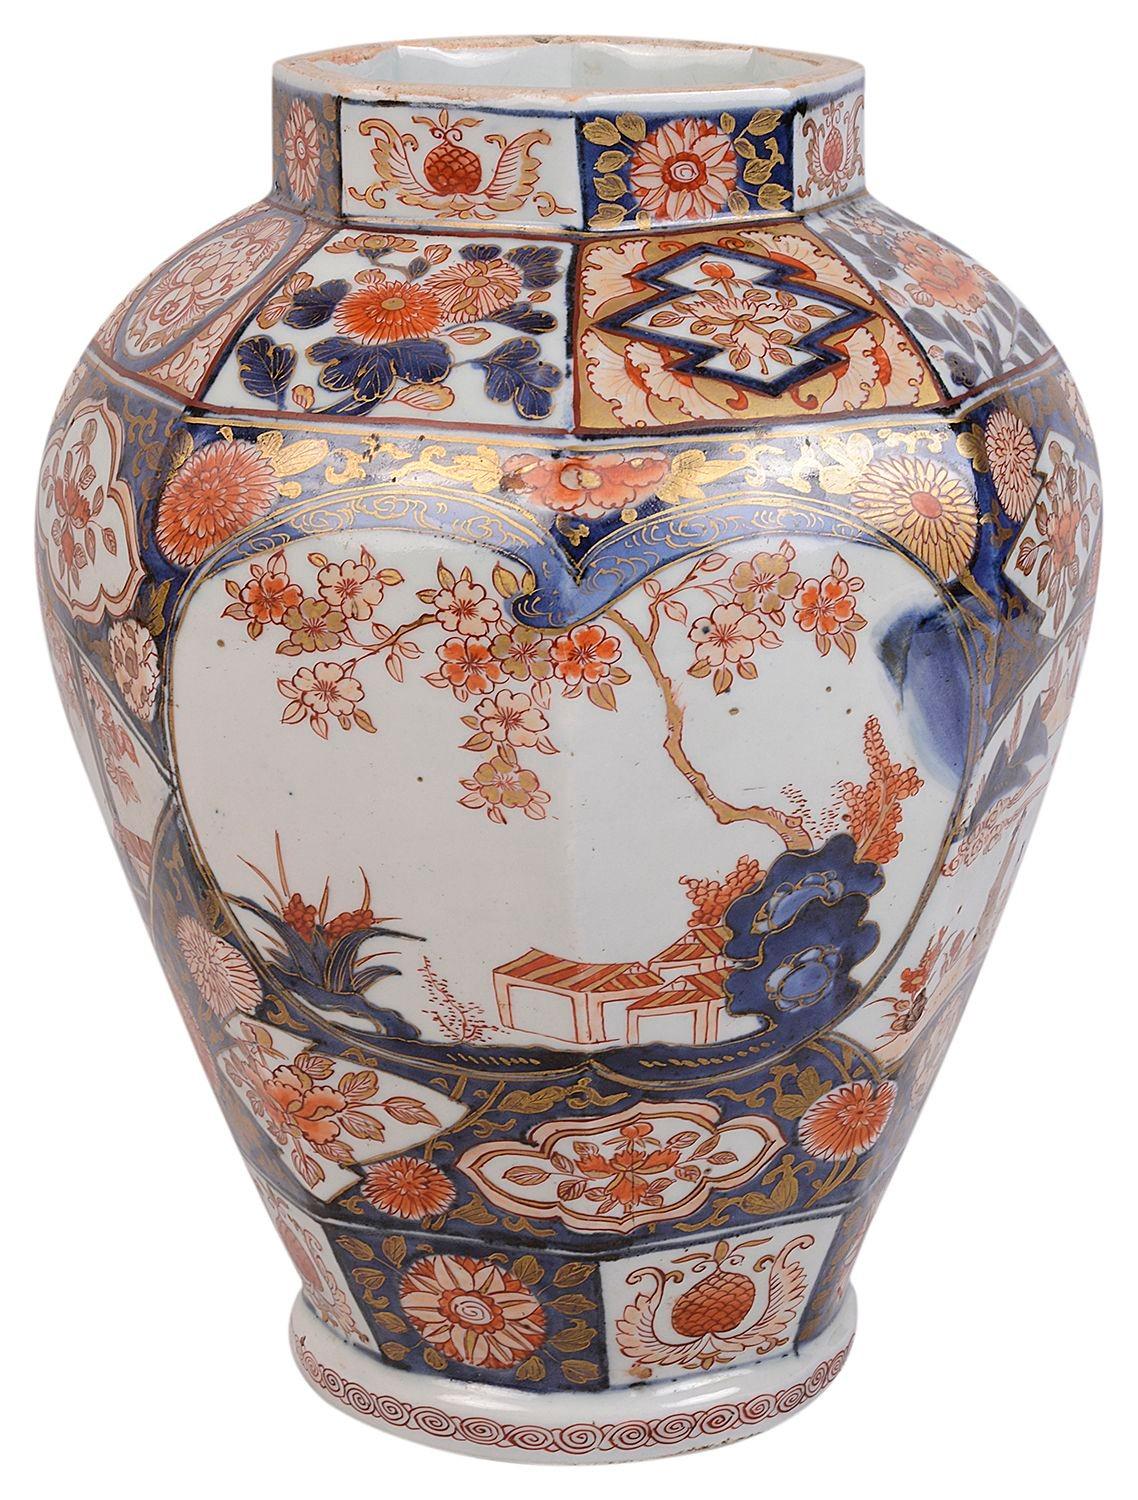 Vase / lampe en porcelaine japonaise Arita Imari du XVIIIe siècle de bonne qualité. Les panneaux peints représentent des arbres en fleurs et des personnages dans un cadre montagneux. 
Transformation en lampe avec ou sans socle doré et nouveau